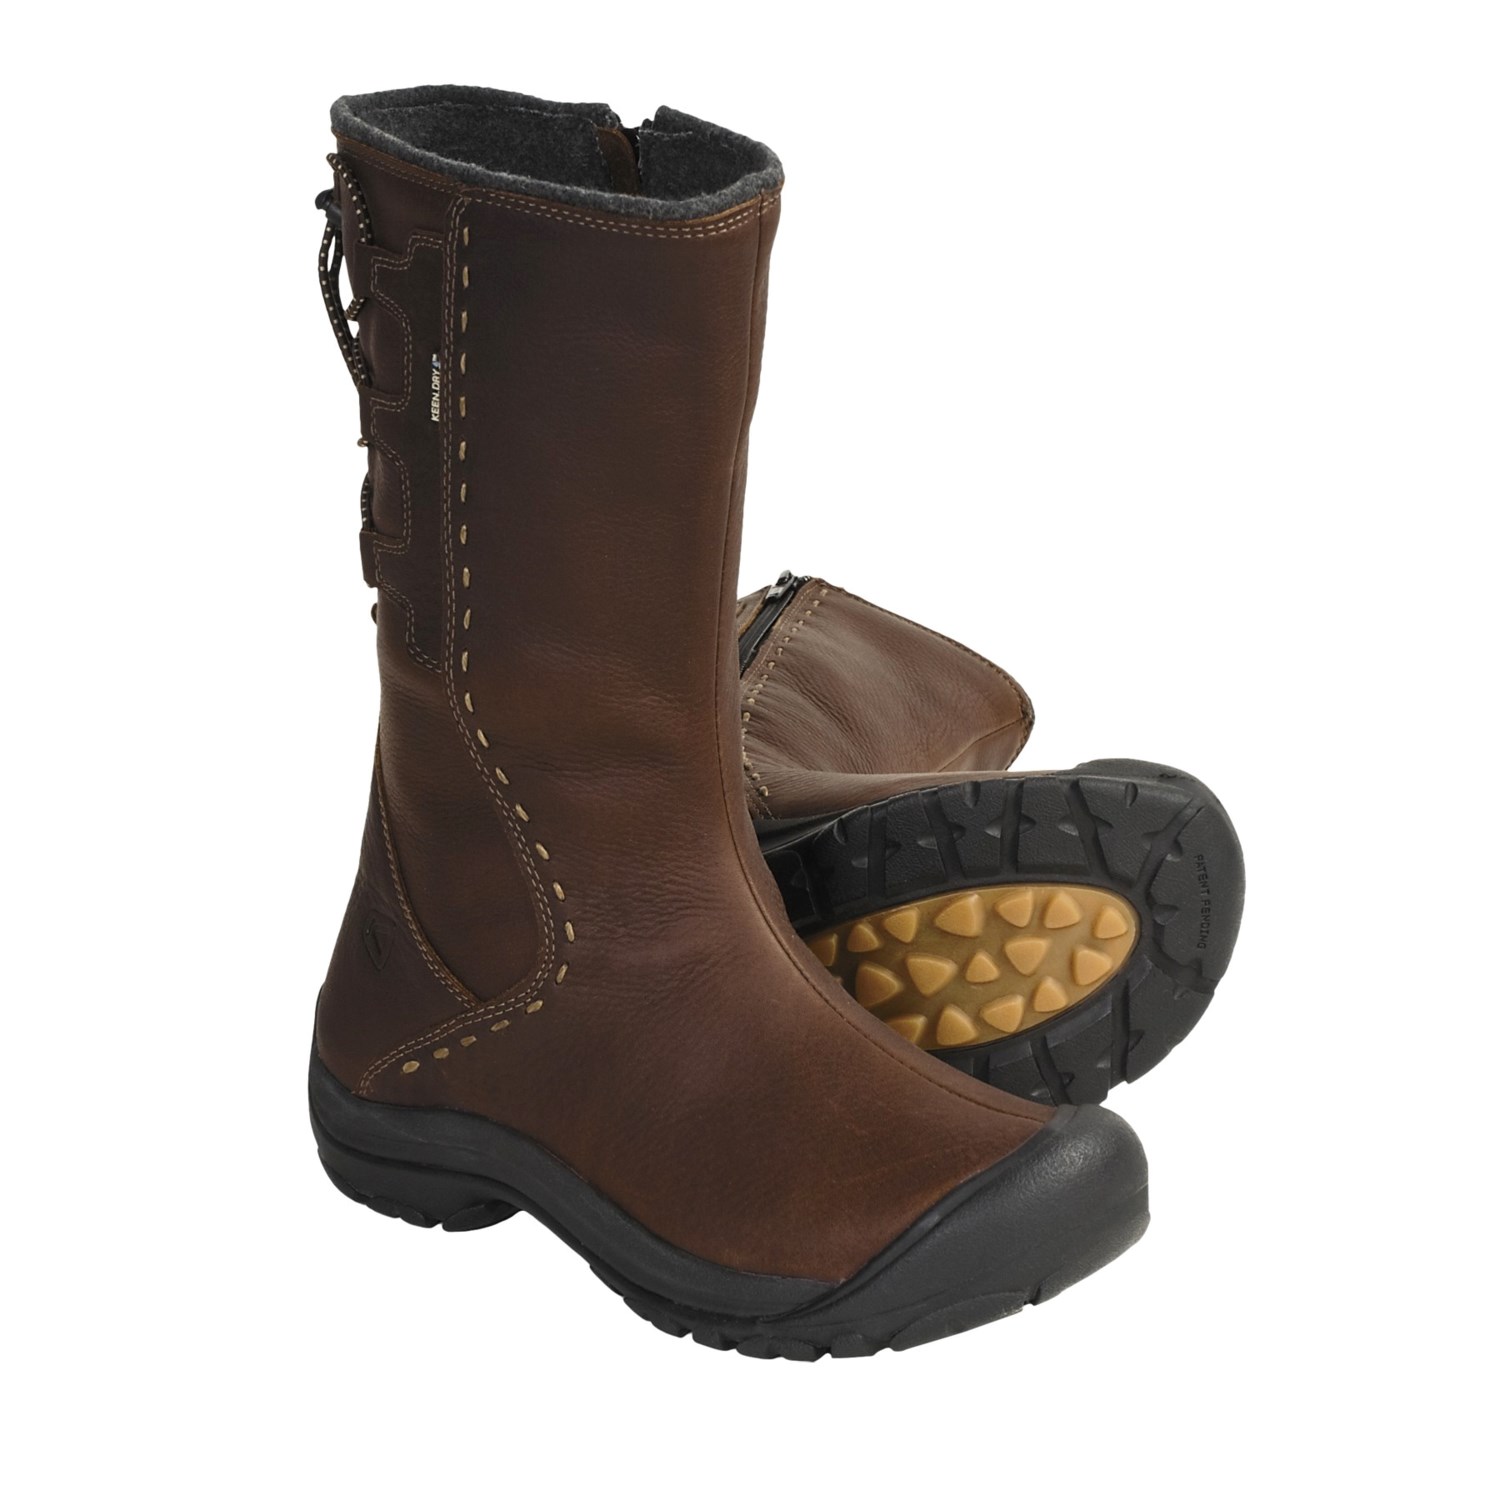 Keen Winthrop Leather Boots - Waterproof, Wool Lined (For Women) in ...